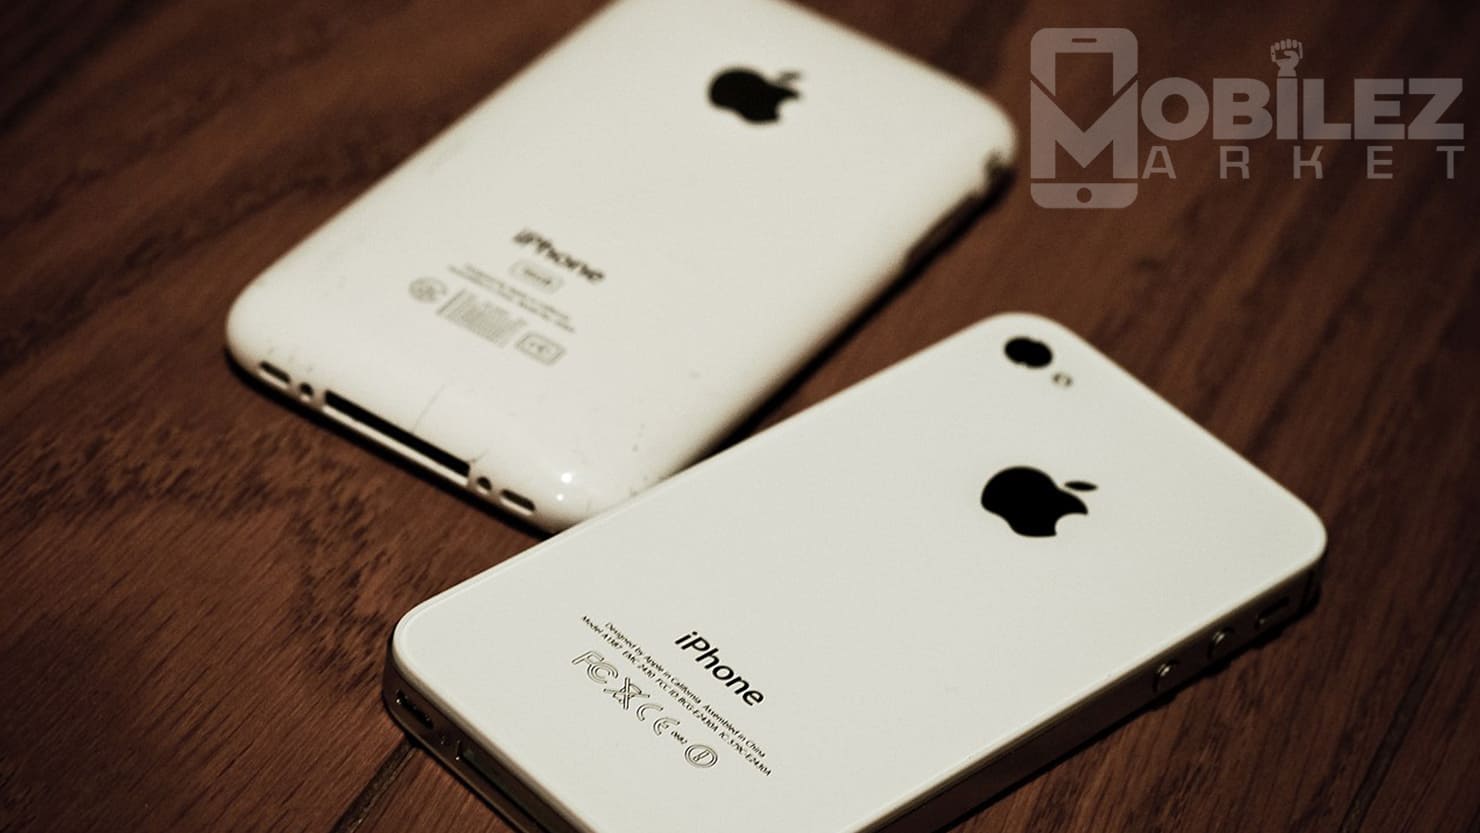 Apple iPhone 4s Buy Online | Apple iPhone 5s Buy Online